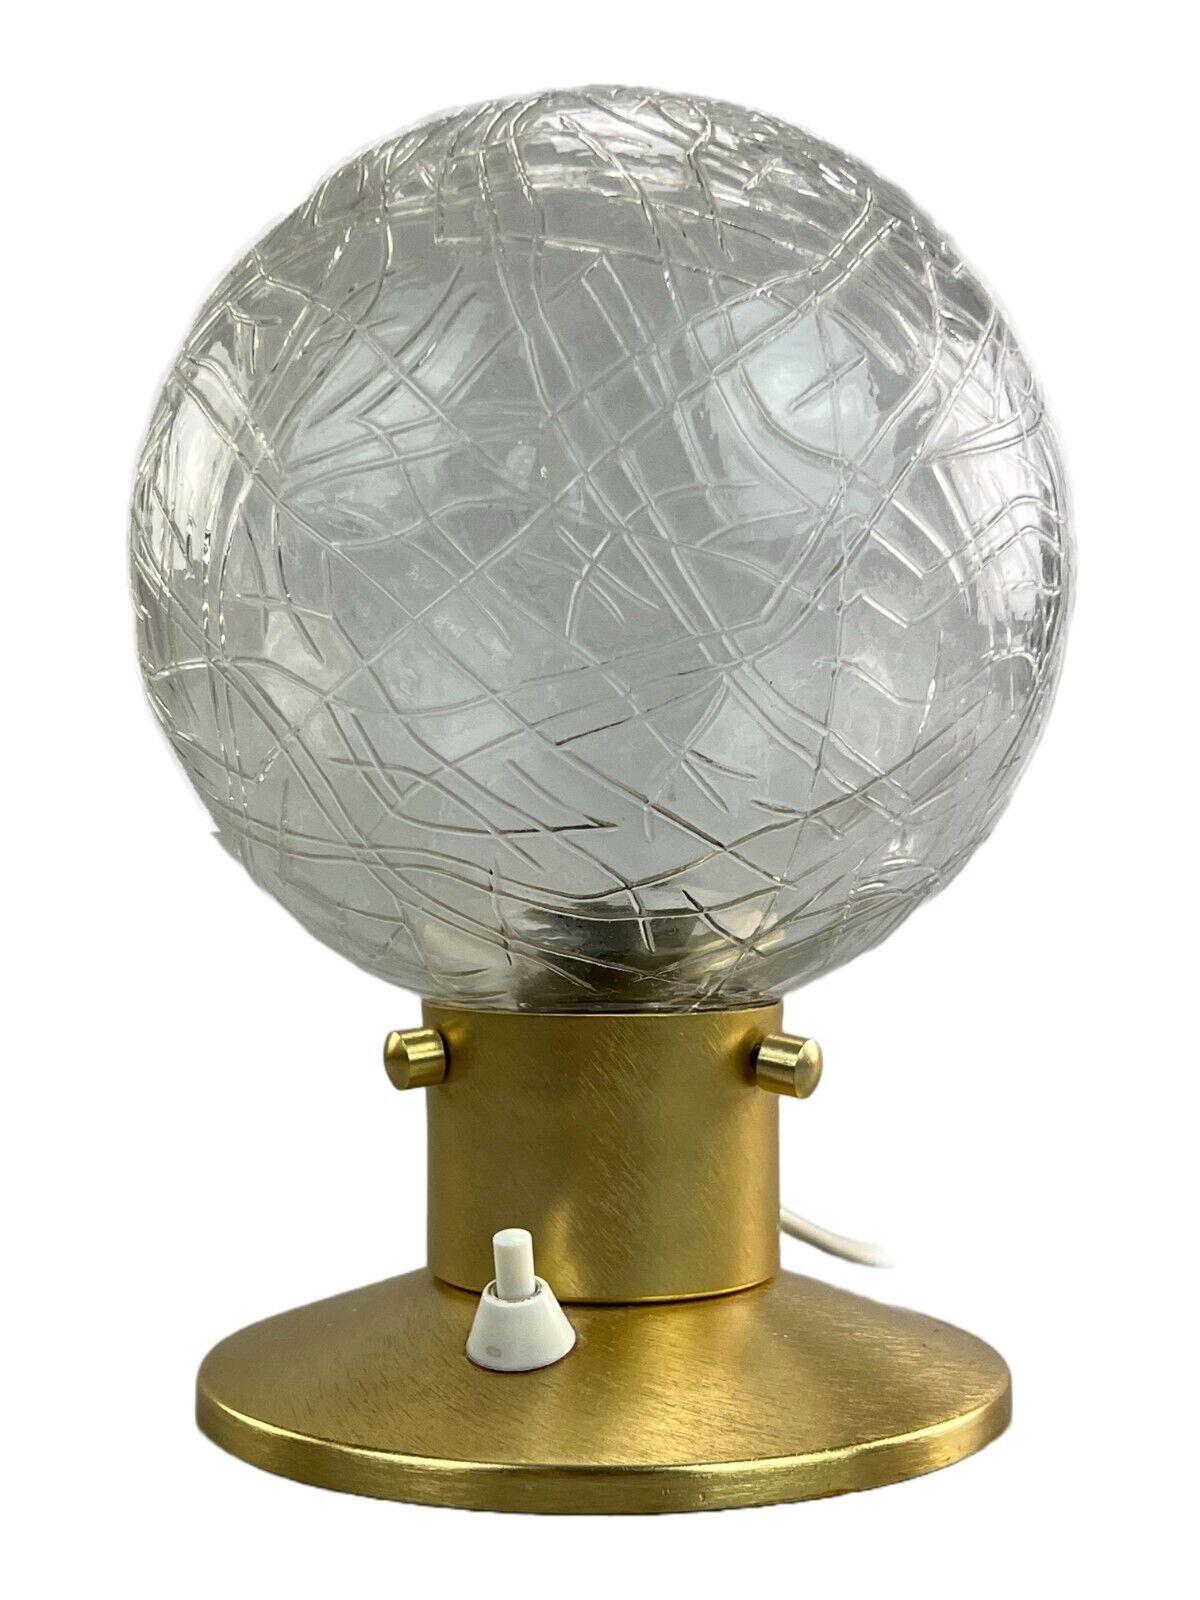 60s 70s Ball lampe lampe de table lampe de chevet lampe de chevet space age design.

Objet : lampe de table

Fabricant :

État : bon

Âge : environ 1960-1970

Dimensions :

Diamètre = 16cm
Hauteur = 22cm

Autres notes :

Douille